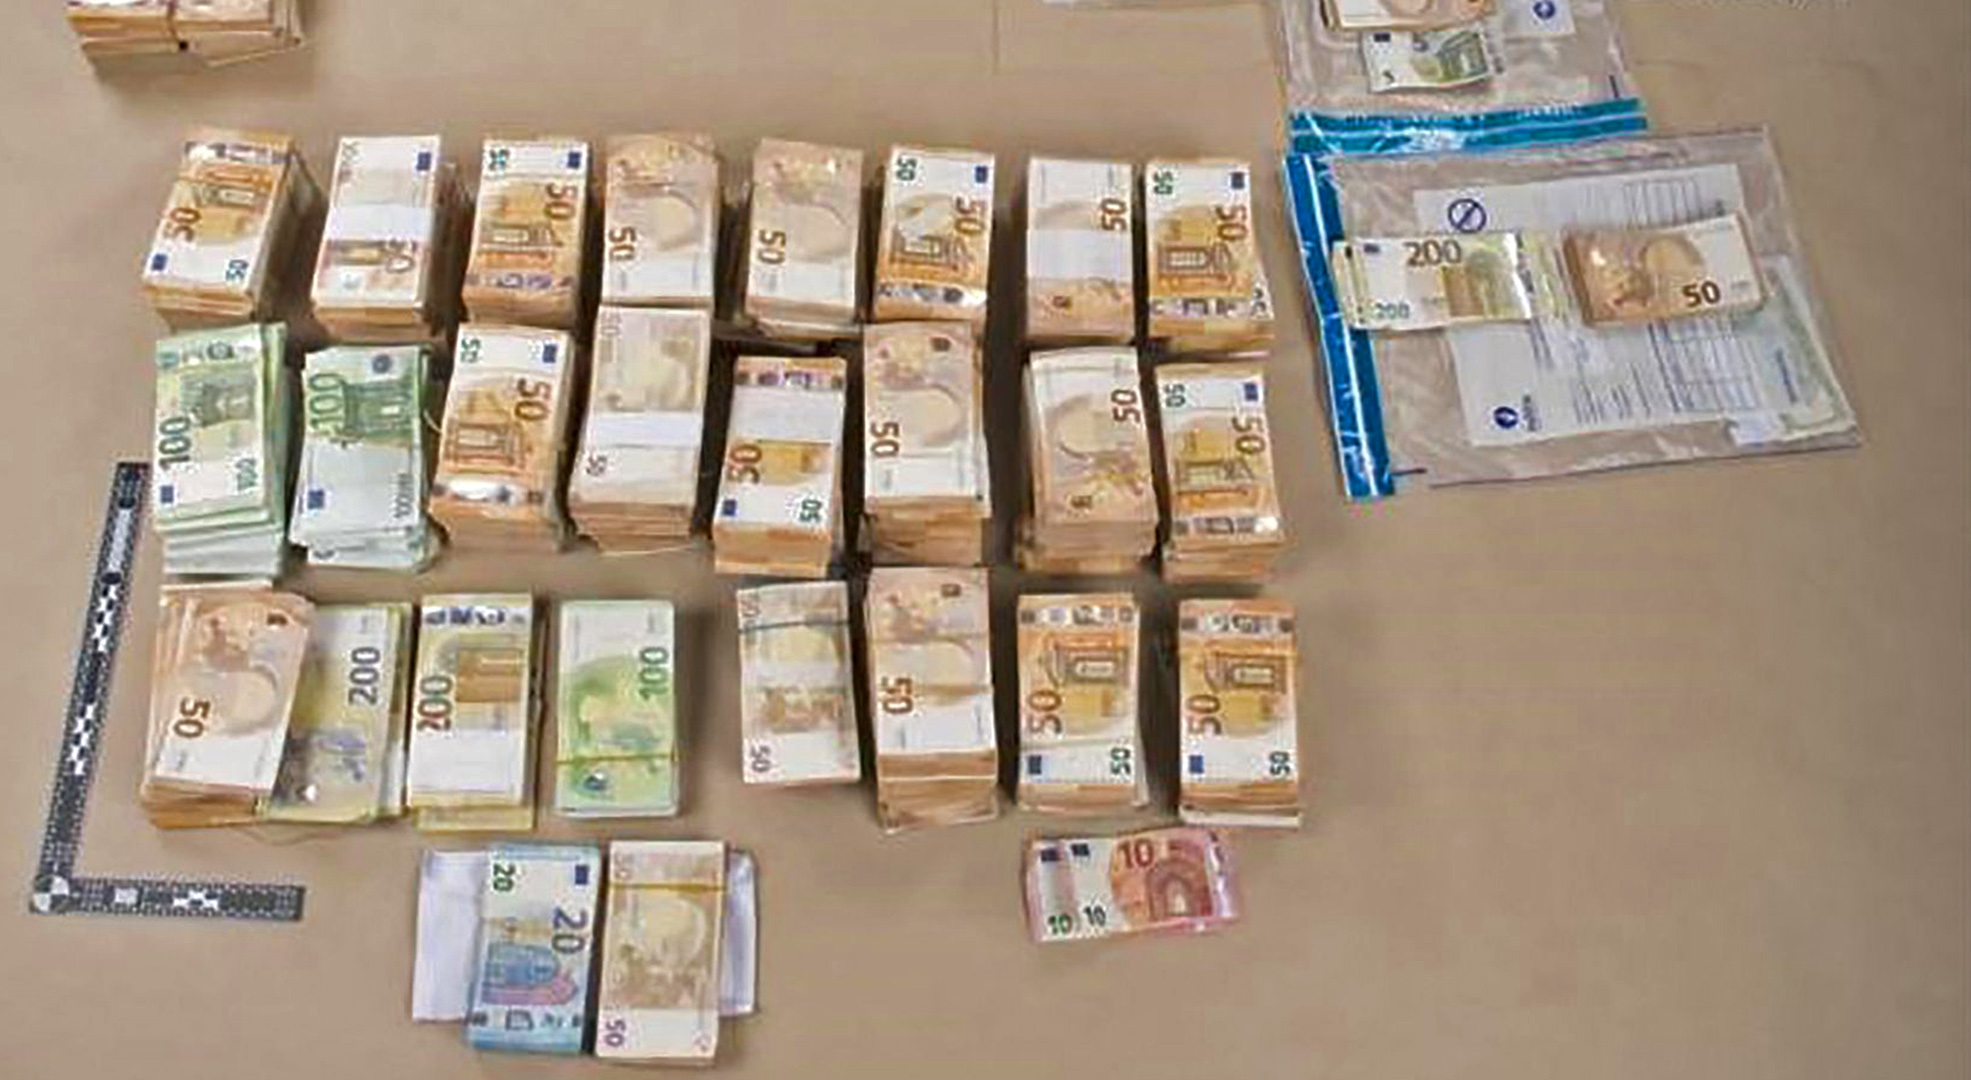 Durch die belgische Polizei im EU-Korruptrionsskandal beschlagnahmtes Bargeld | AFP